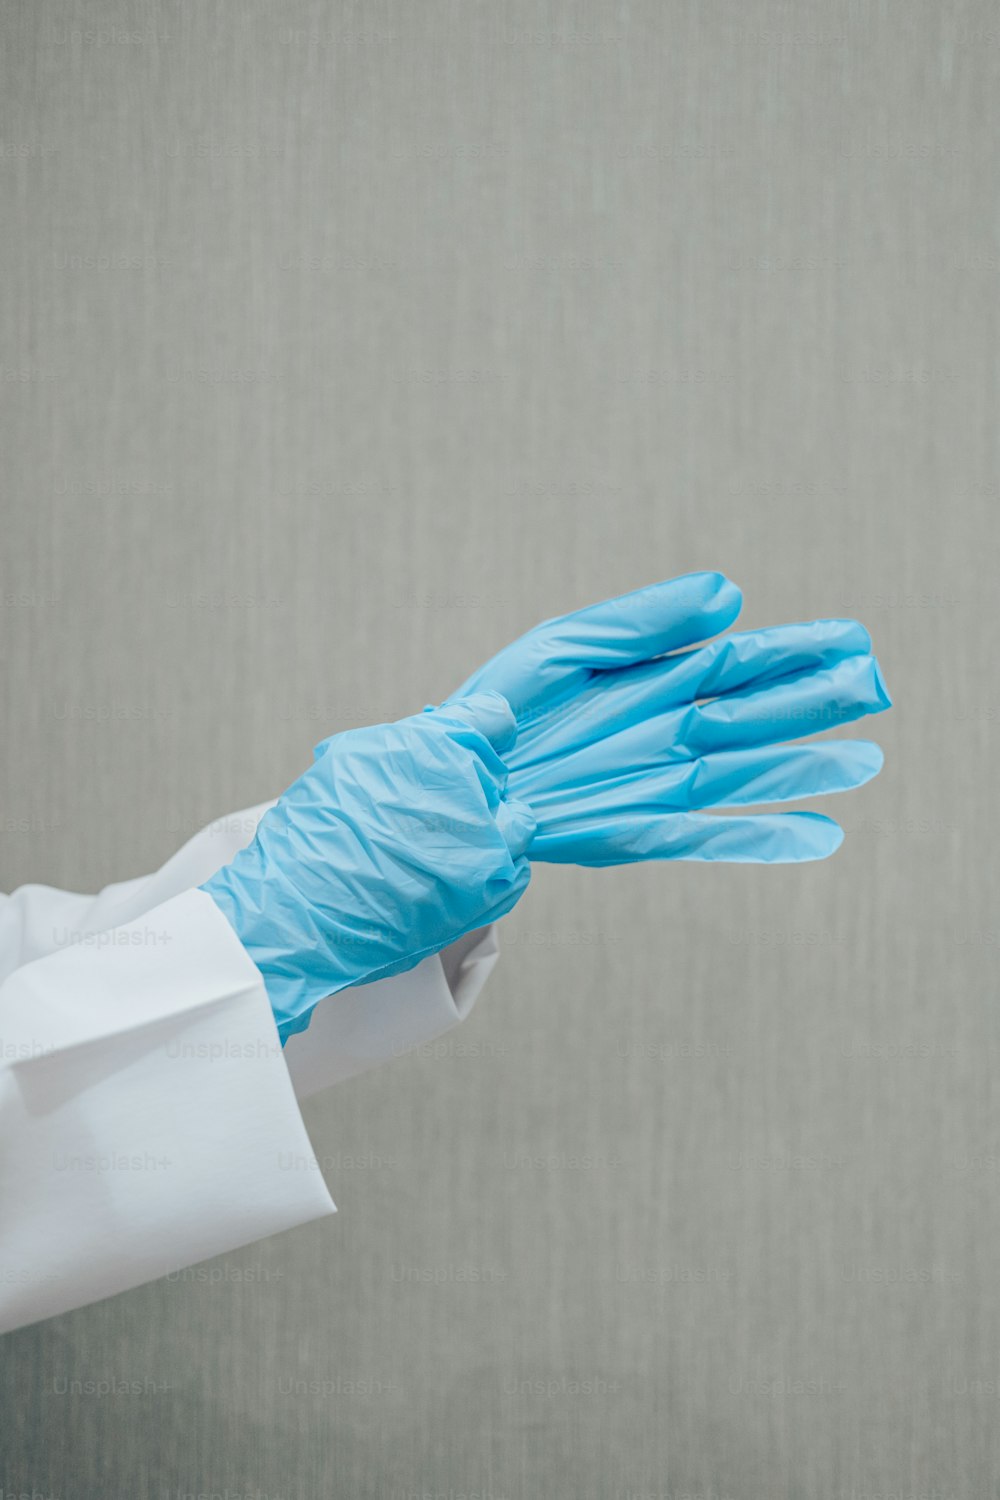 una persona in camice bianco e guanti blu